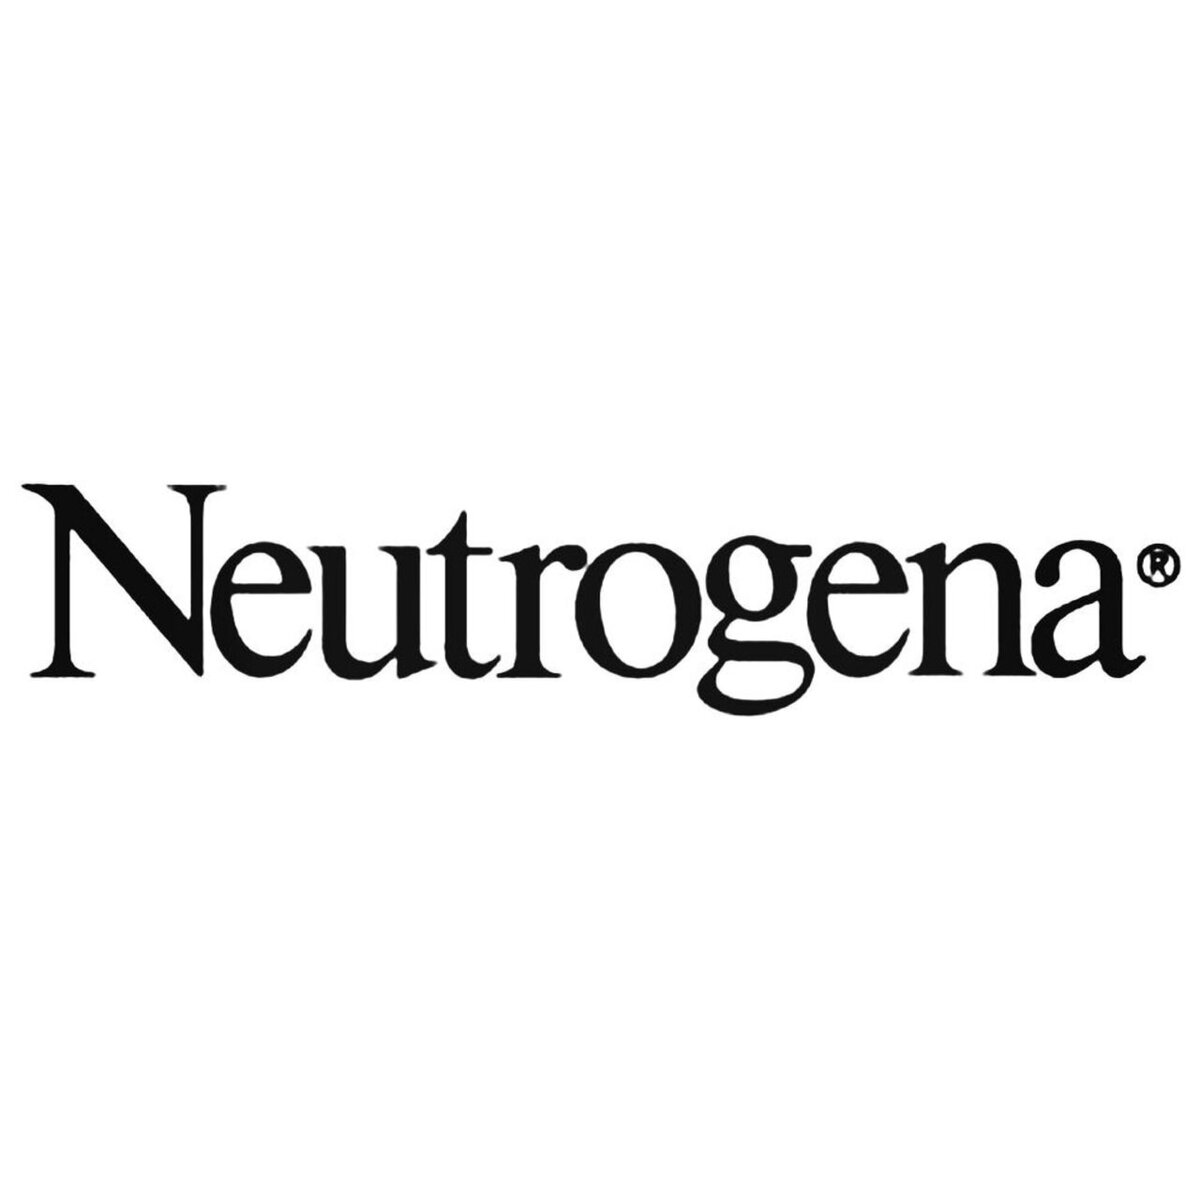 Neutrogena-Logo-Decal-Sticker__36580.1510914018